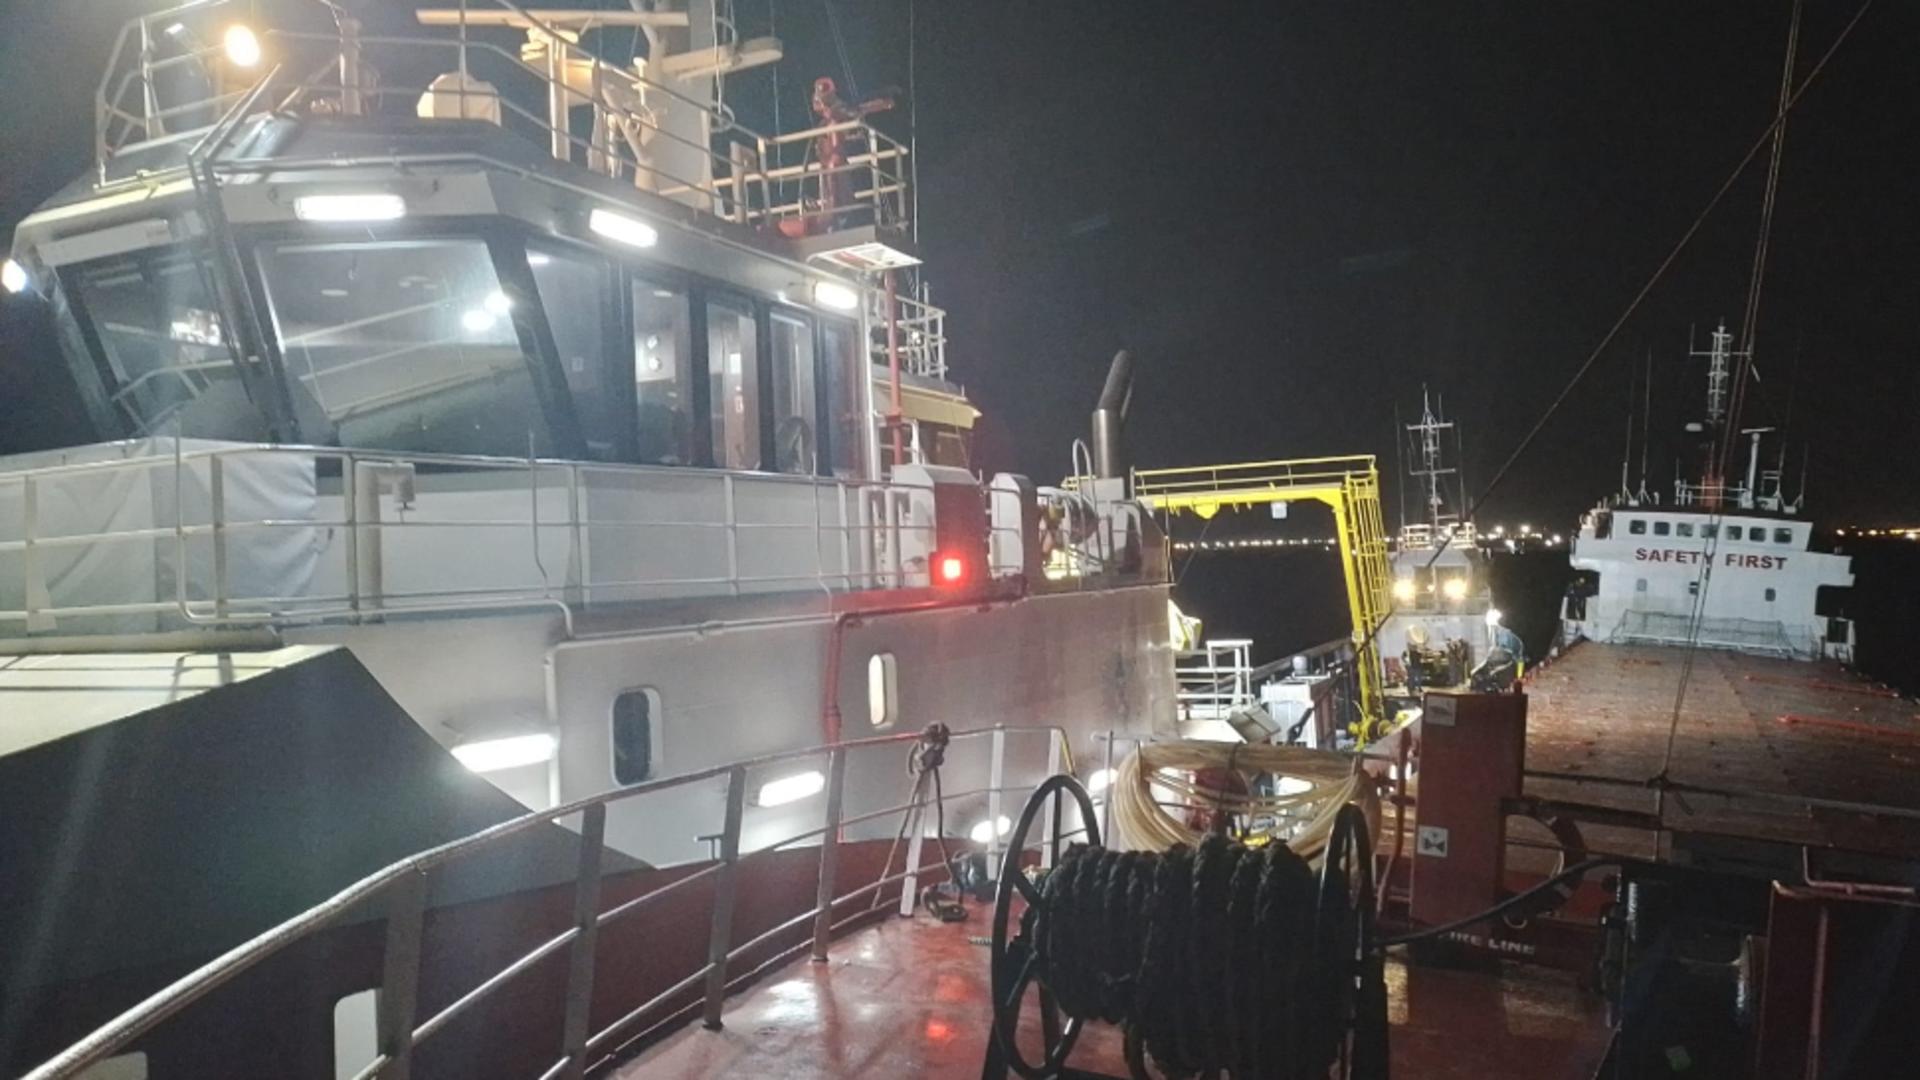 Alertă în Marea Neagră: O navă cu 8 oameni la bord, în pericol de scufundare în zona Portului Constanța - Operațiune dificilă de salvare